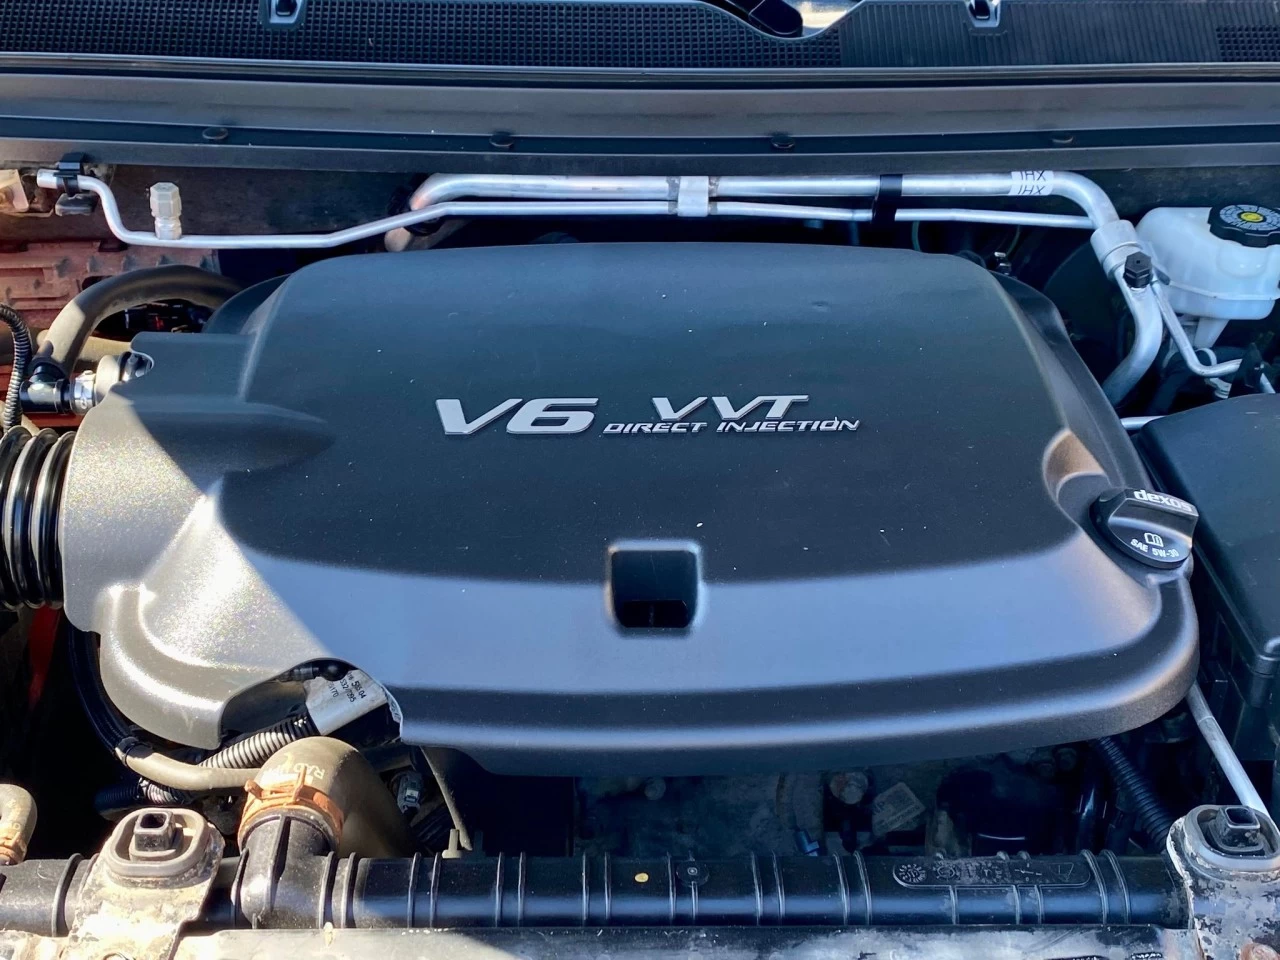 2017 CHEVROLET COLORADO LT V6 4X4 CREW CAB / BOITE DE 6 PIEDS  Main Image